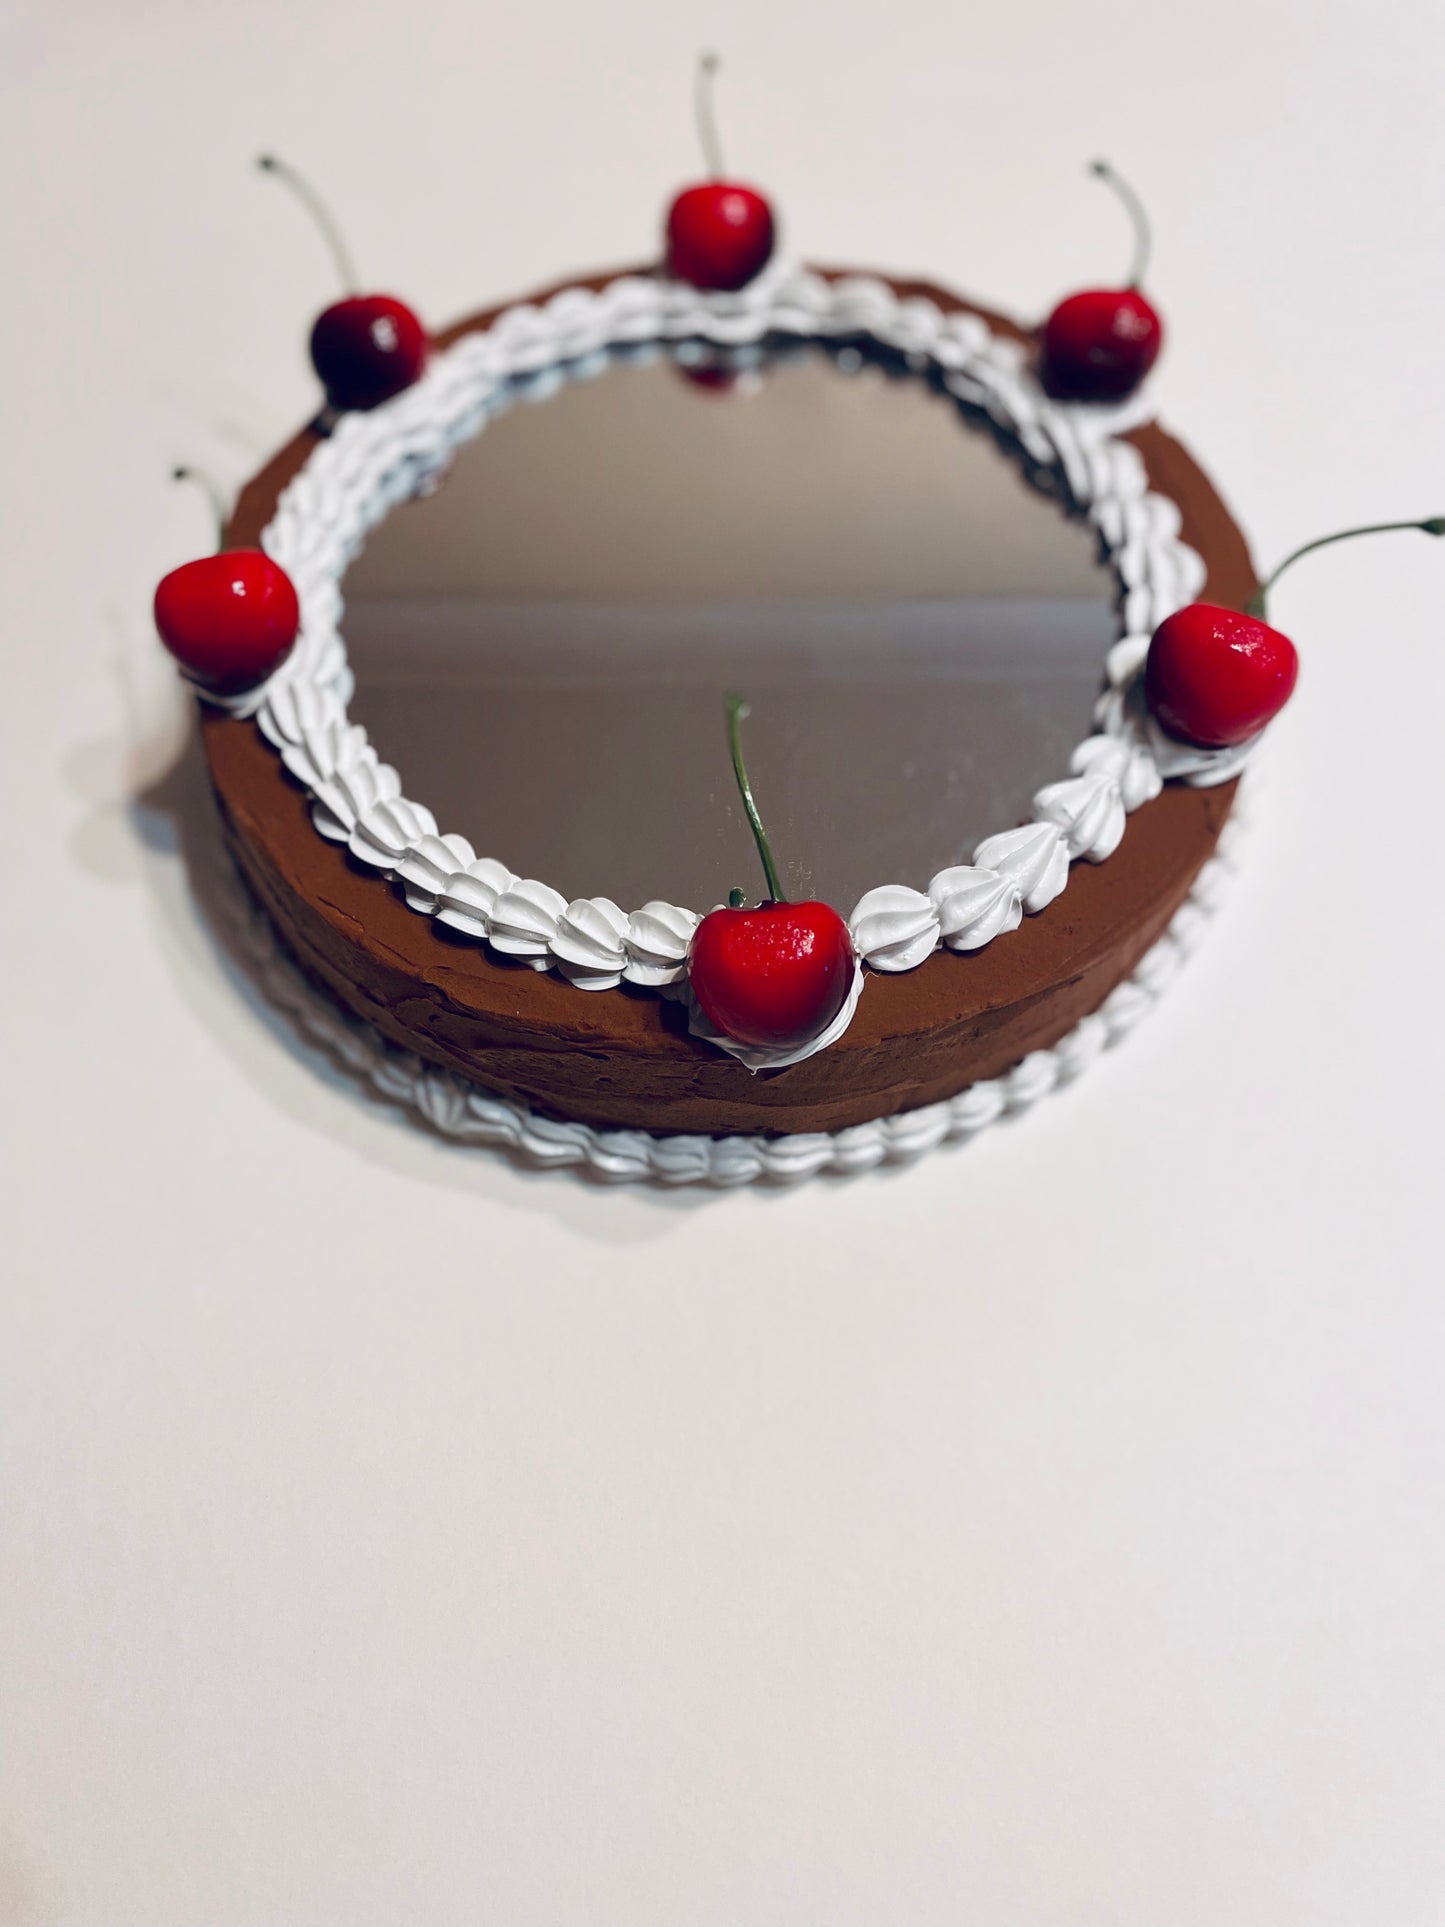 Cake Mirror - Chocolate and Vanilla